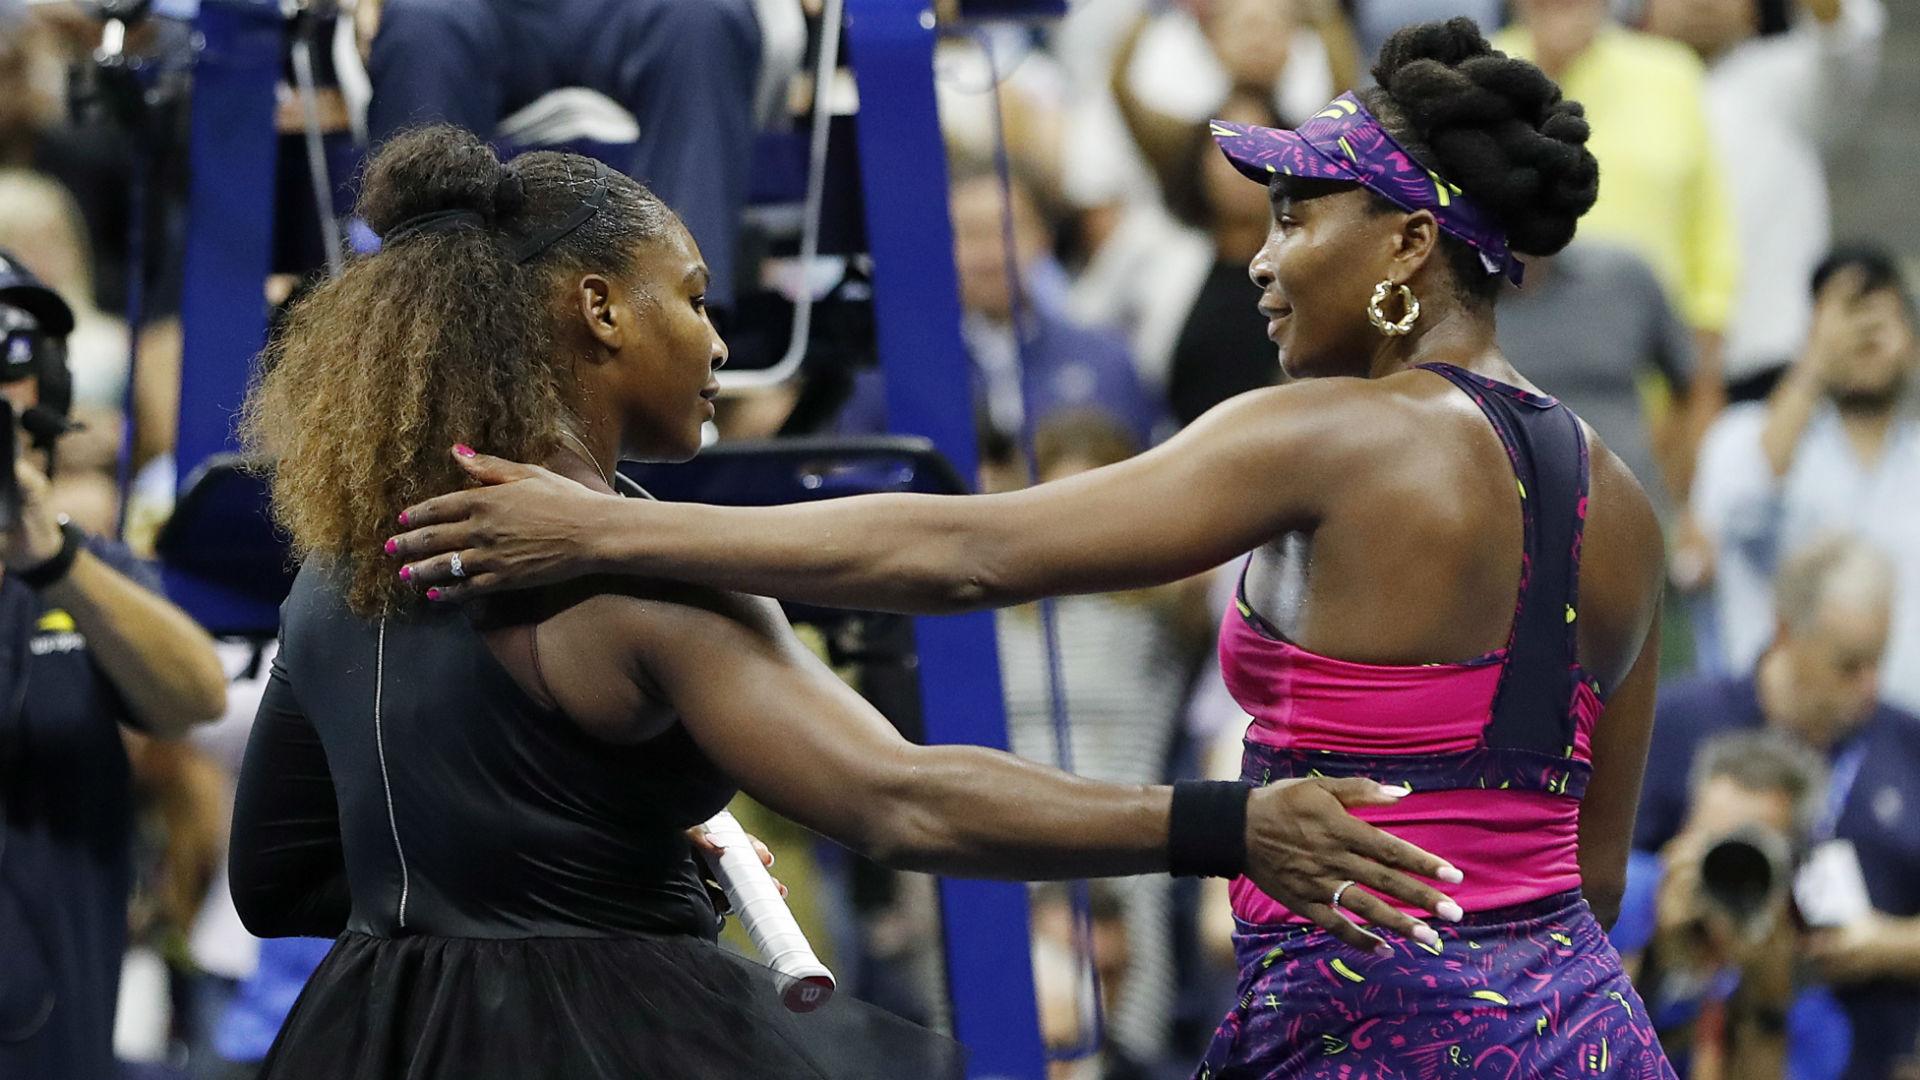 US Open: Serena Williams wyraźnie lepsza od starszej siostry Venus. "Ona pokazywała mi świat, pomagała, wspierała jako ta starsza"